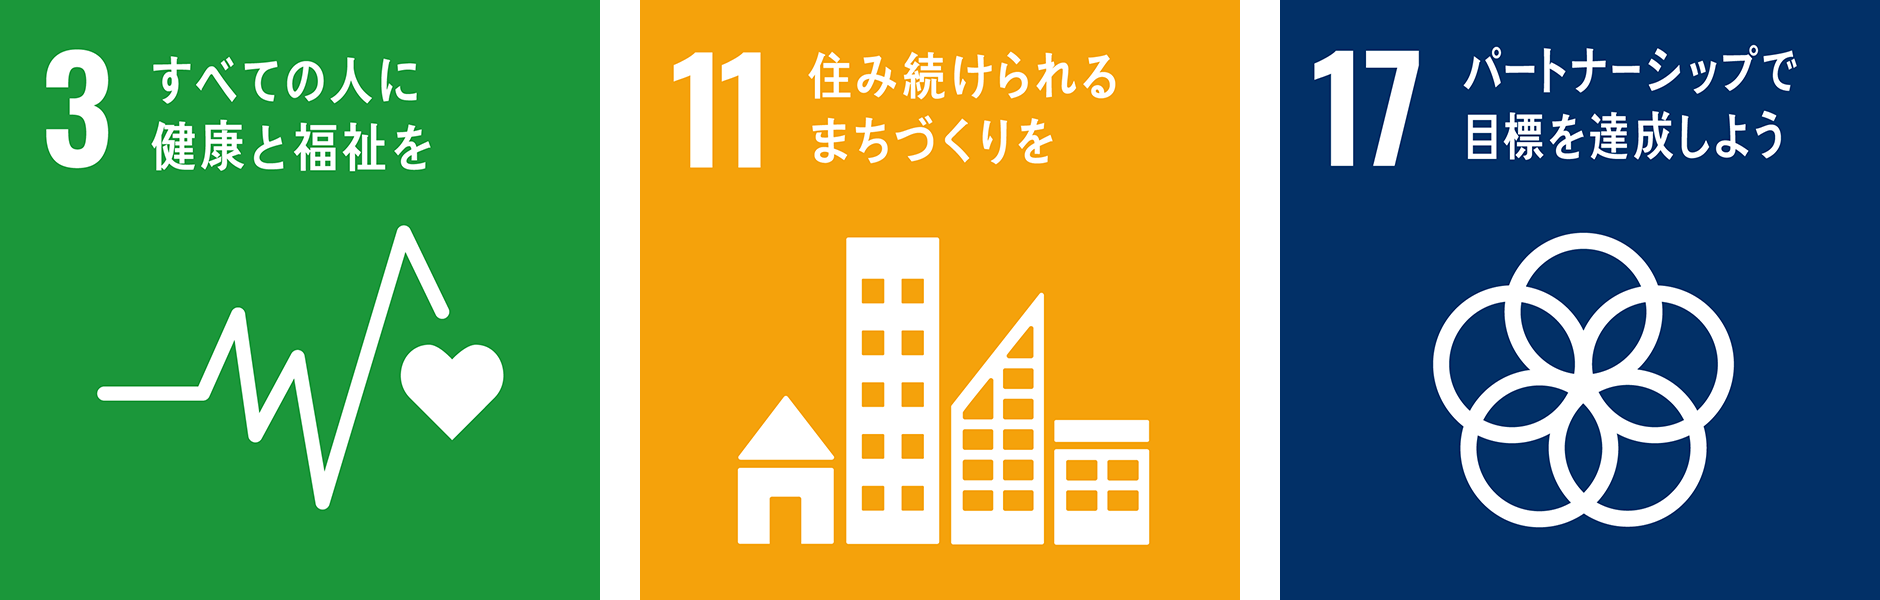 SDGs 3, 11, 17 logo